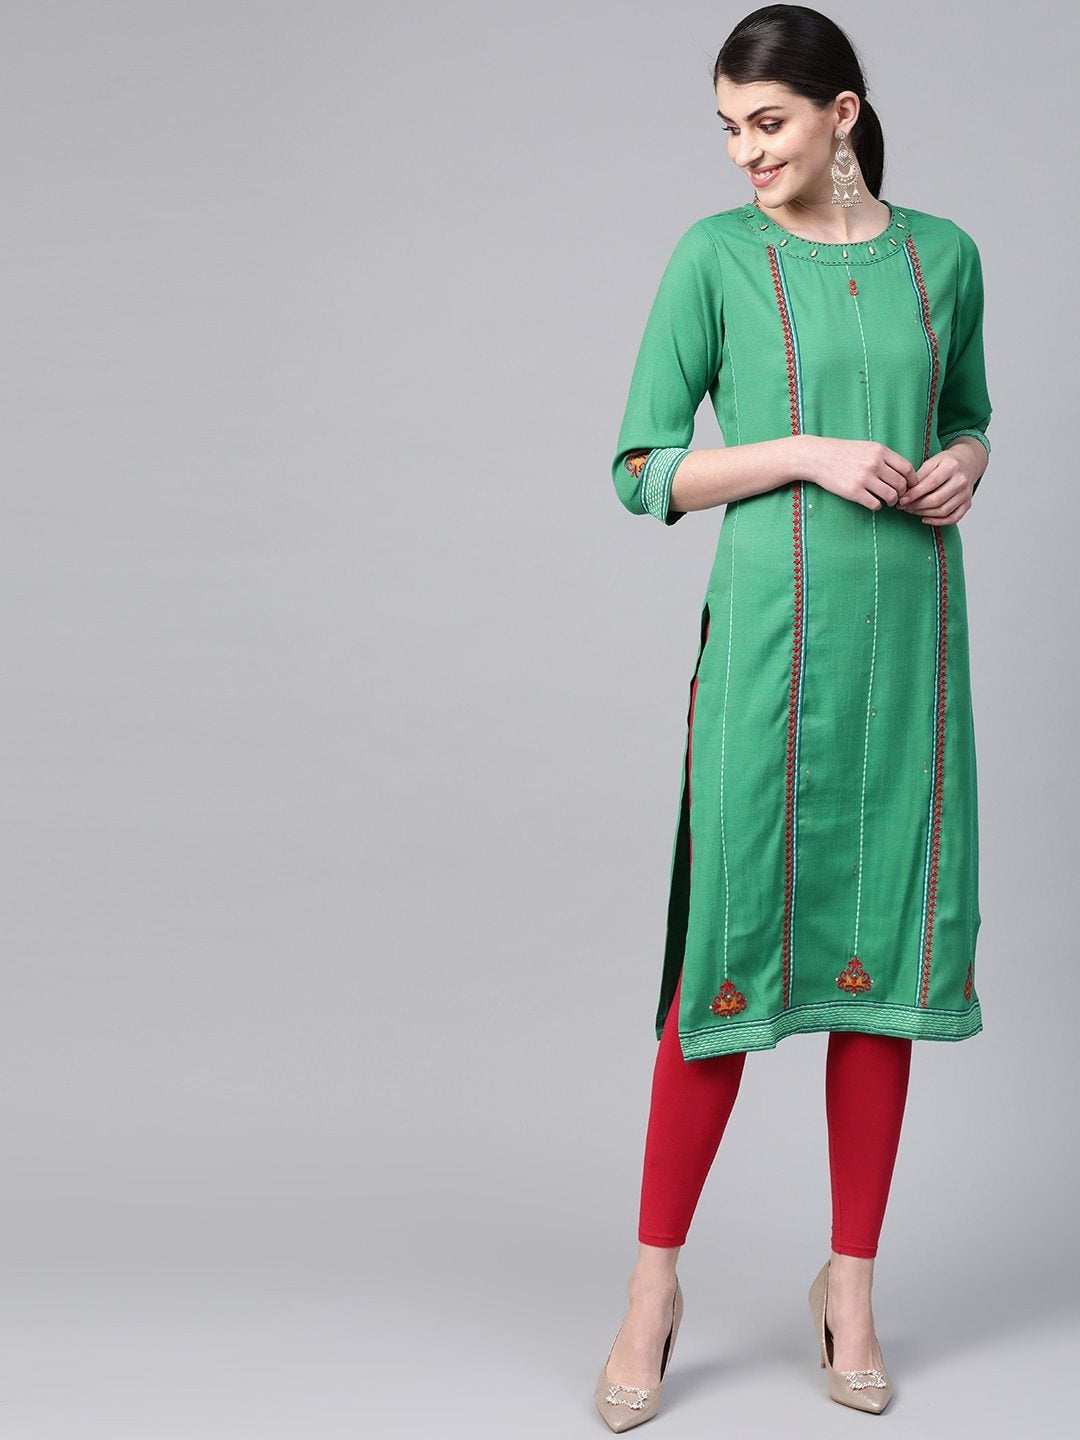 Women's Green & Red Embroidered Straight Kurta - Meeranshi